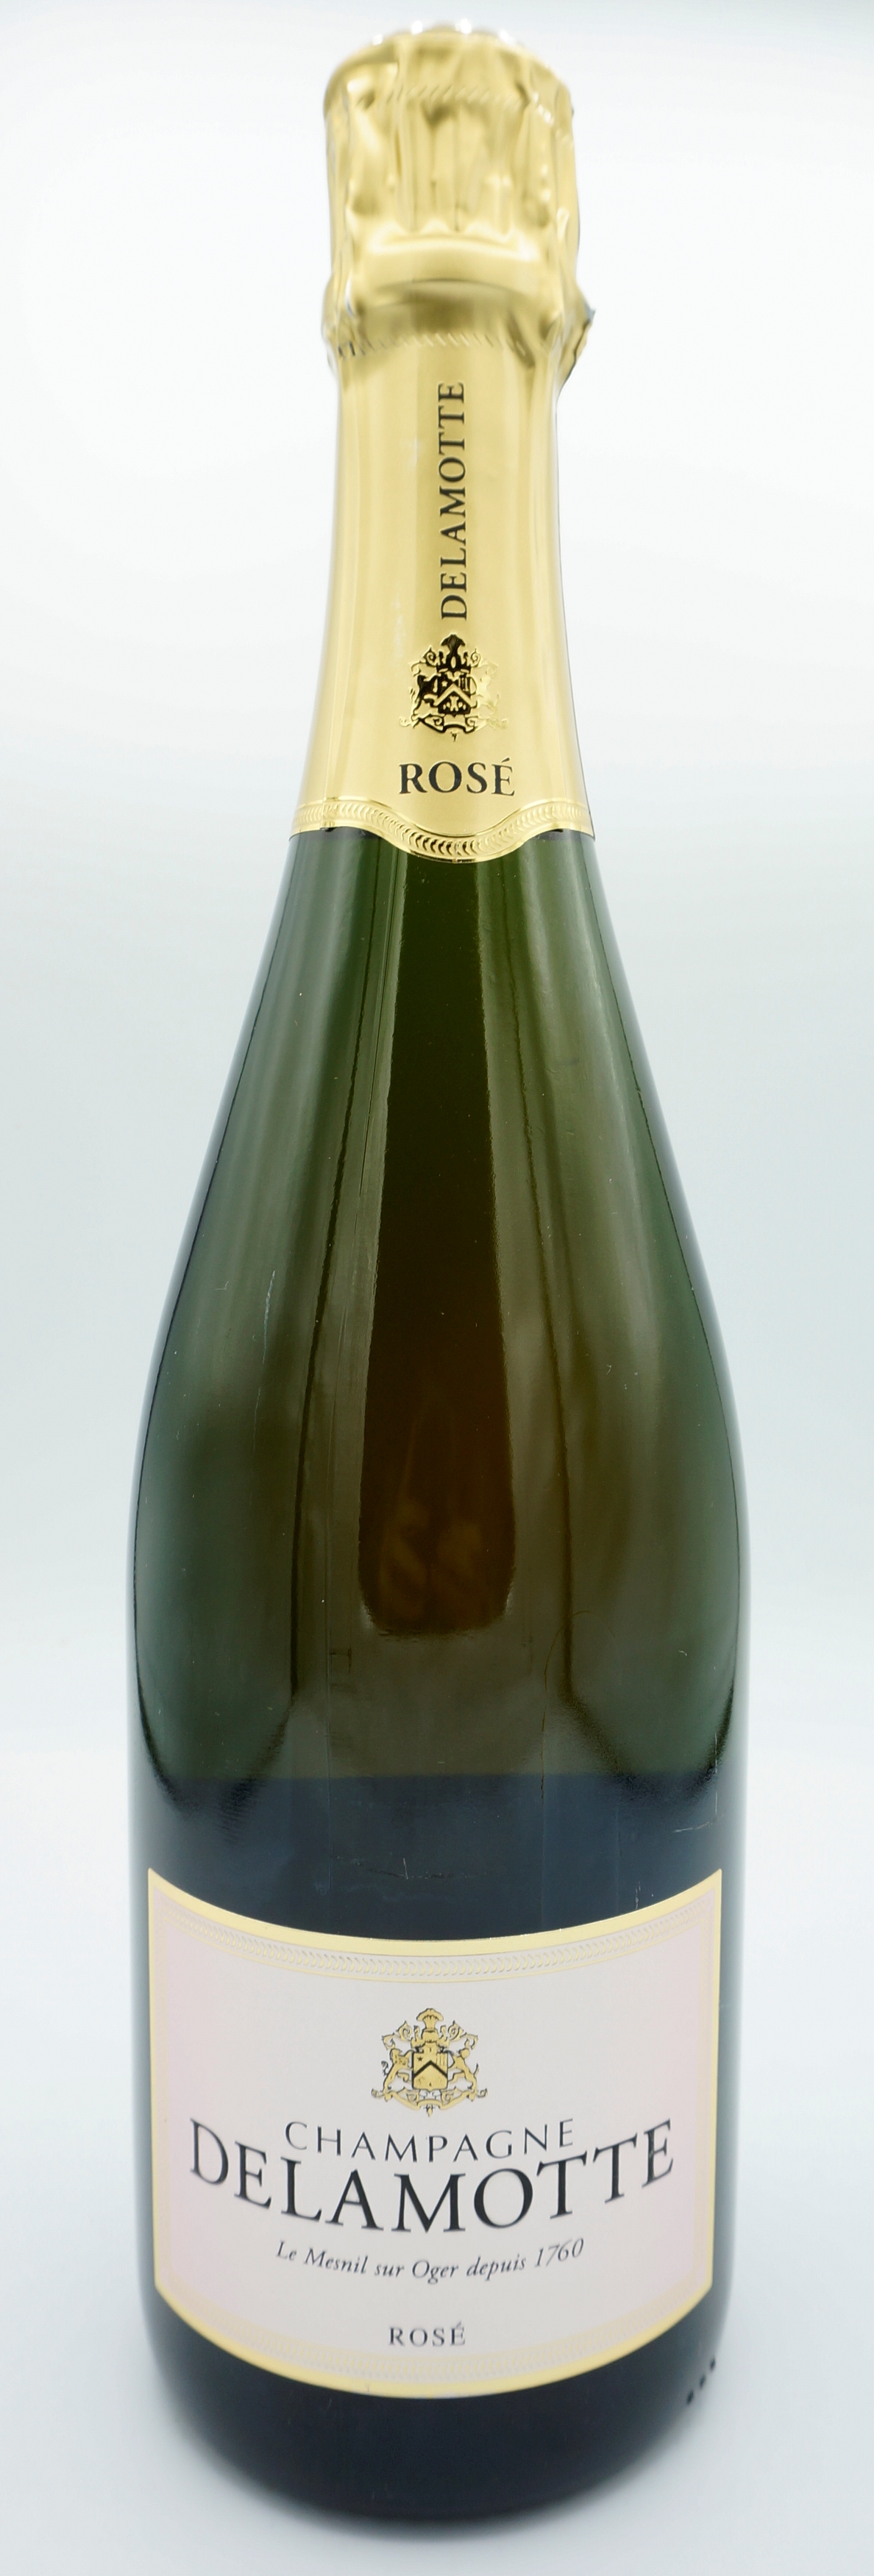 ３本セット」Delamotte<br>Rose[NV]750ml<br>蔵出し [NV] ロゼ ドゥラモット Delamotte<br>フランス  シャンパン ワイン スパークリング スパークリングワイン・シャンパン